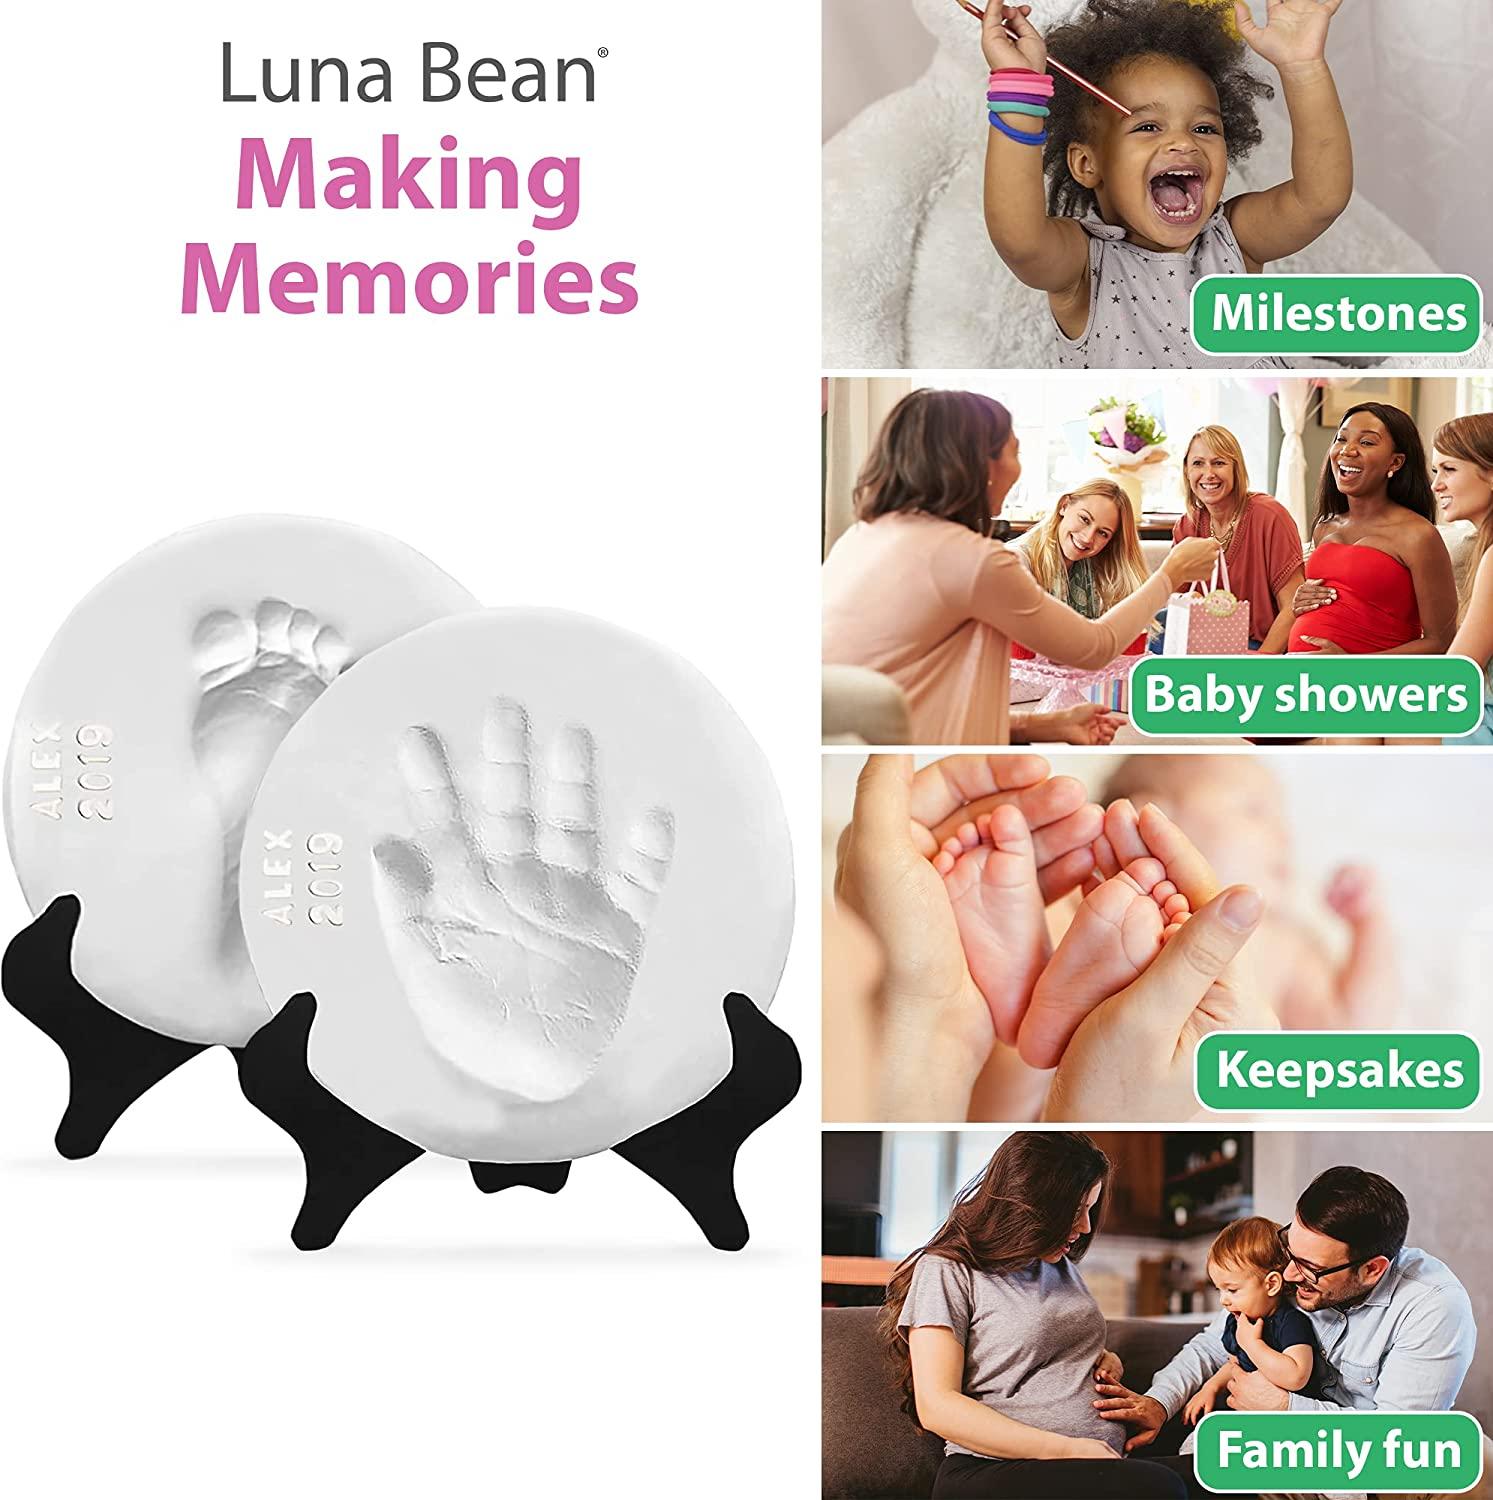  Treasured Memories Inkless Hand and Footprint Kit : Baby